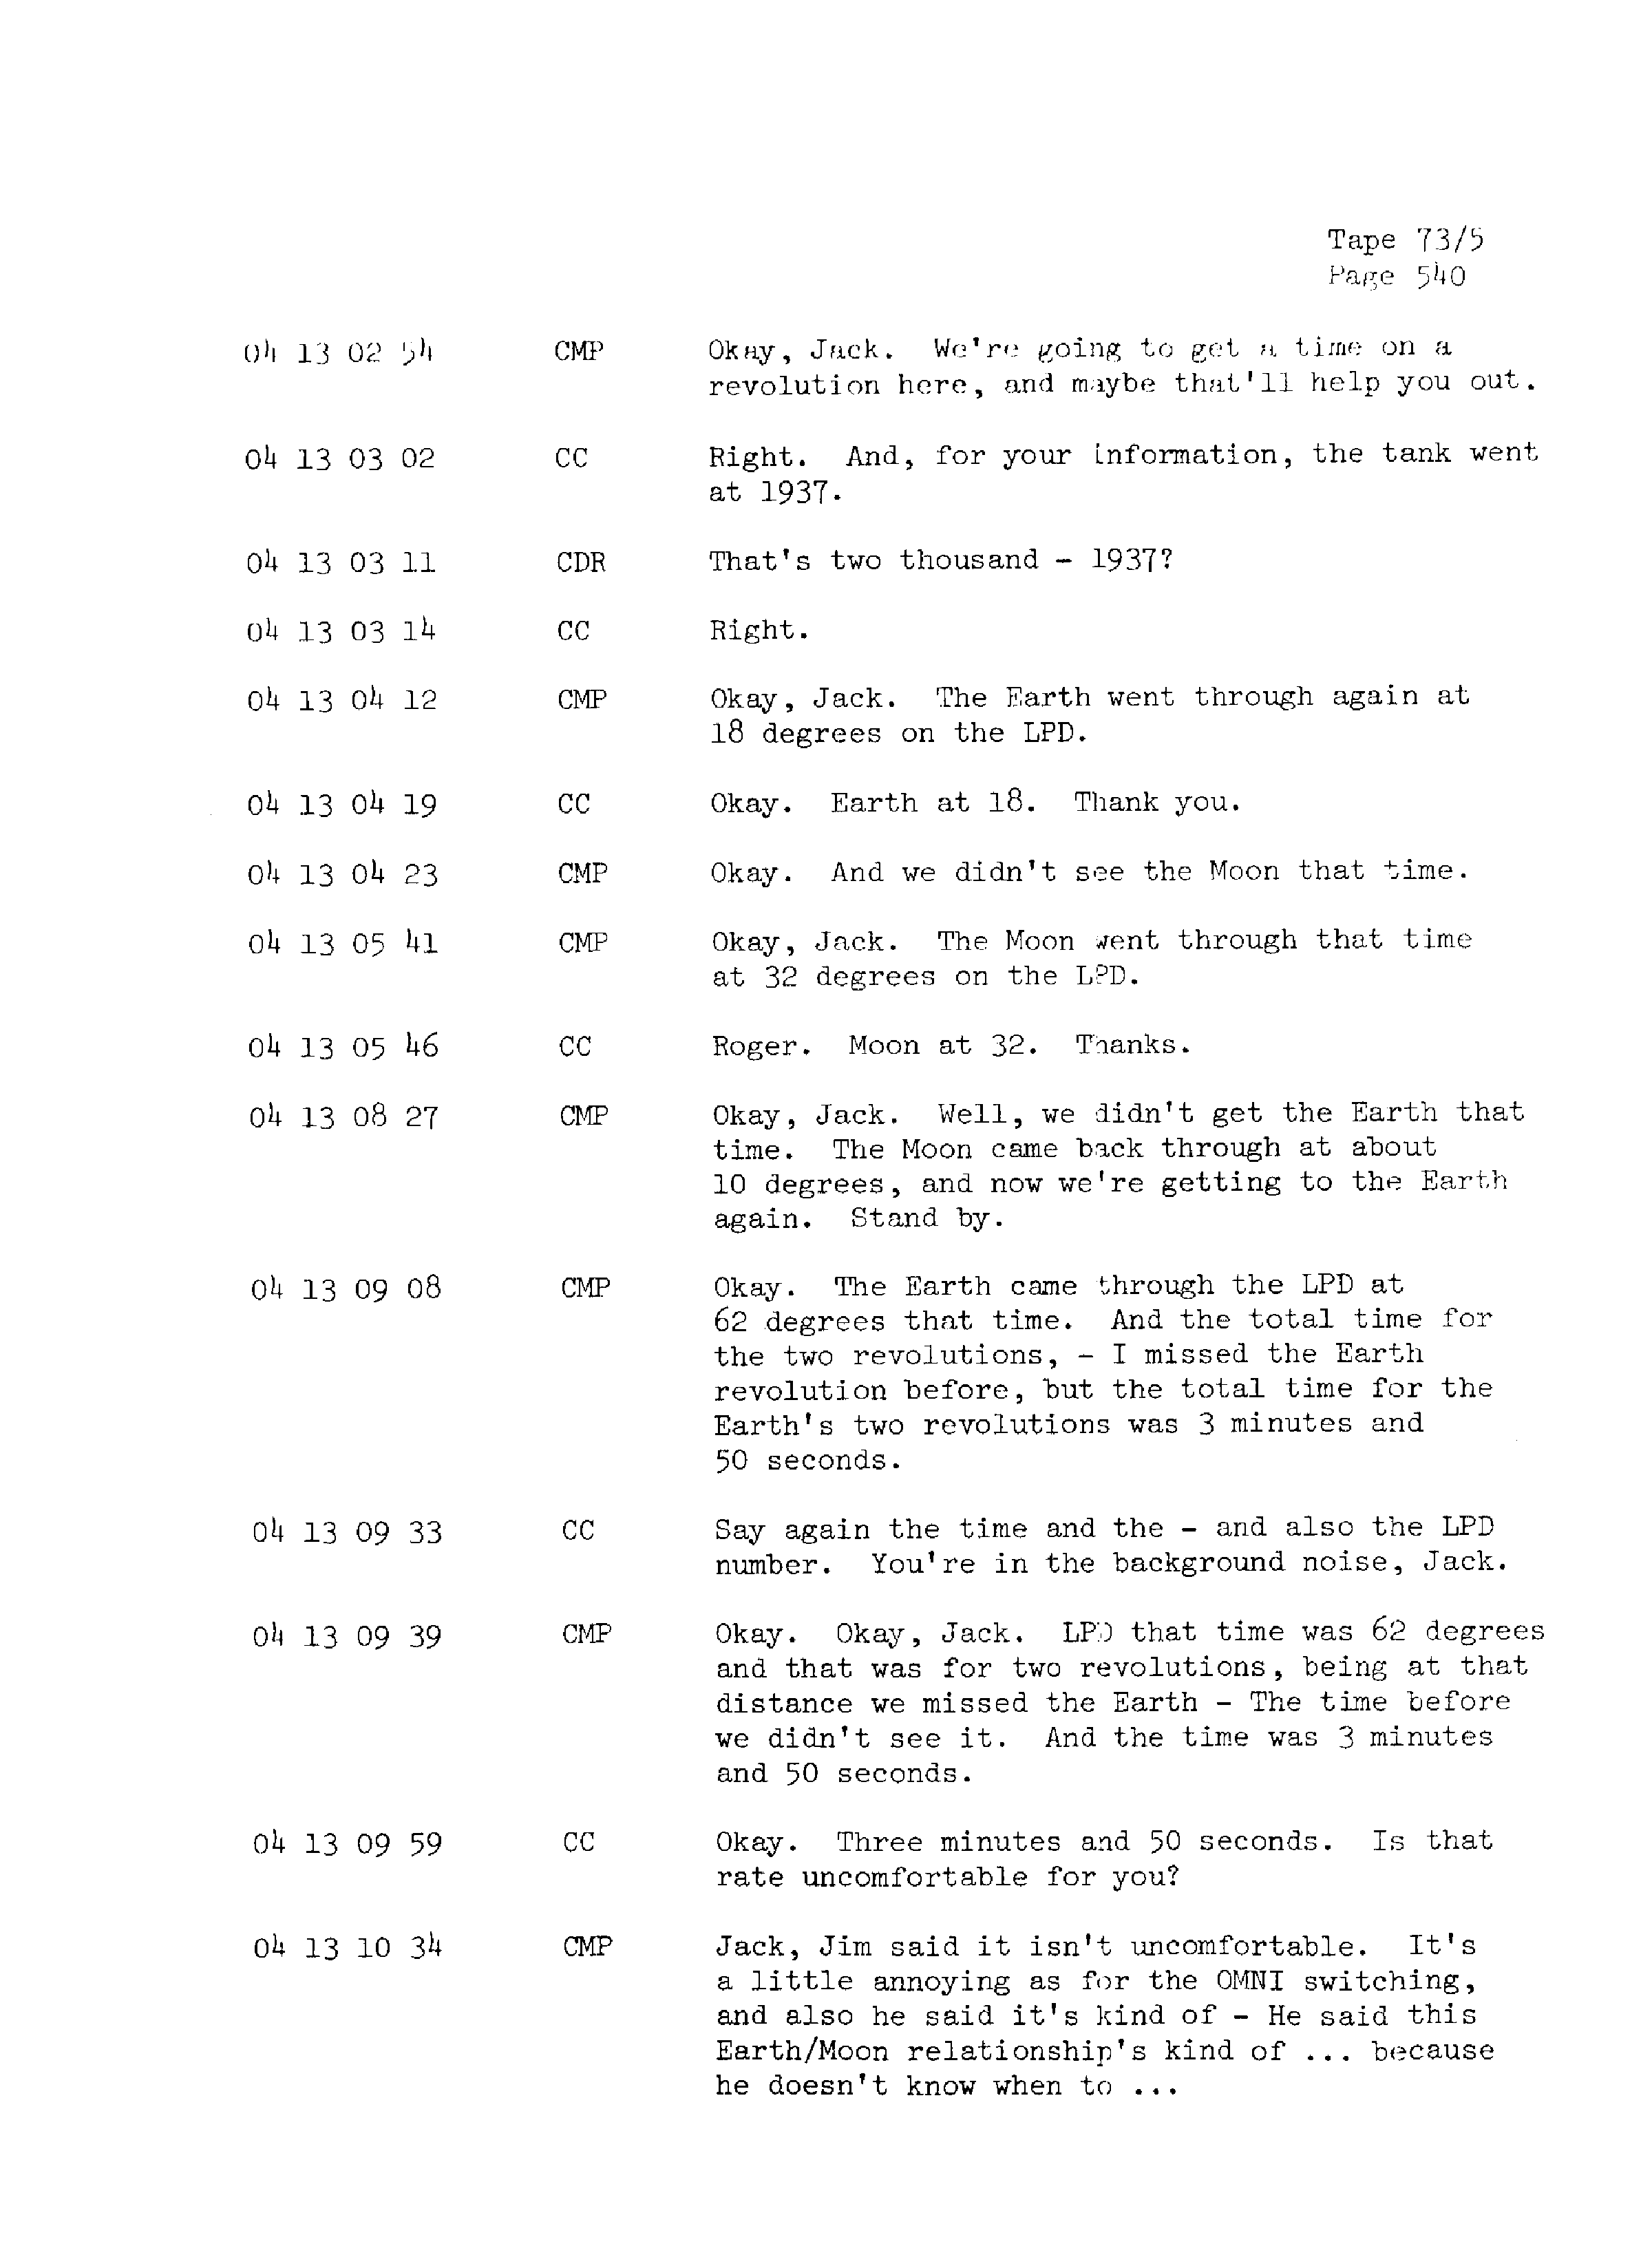 Page 547 of Apollo 13’s original transcript